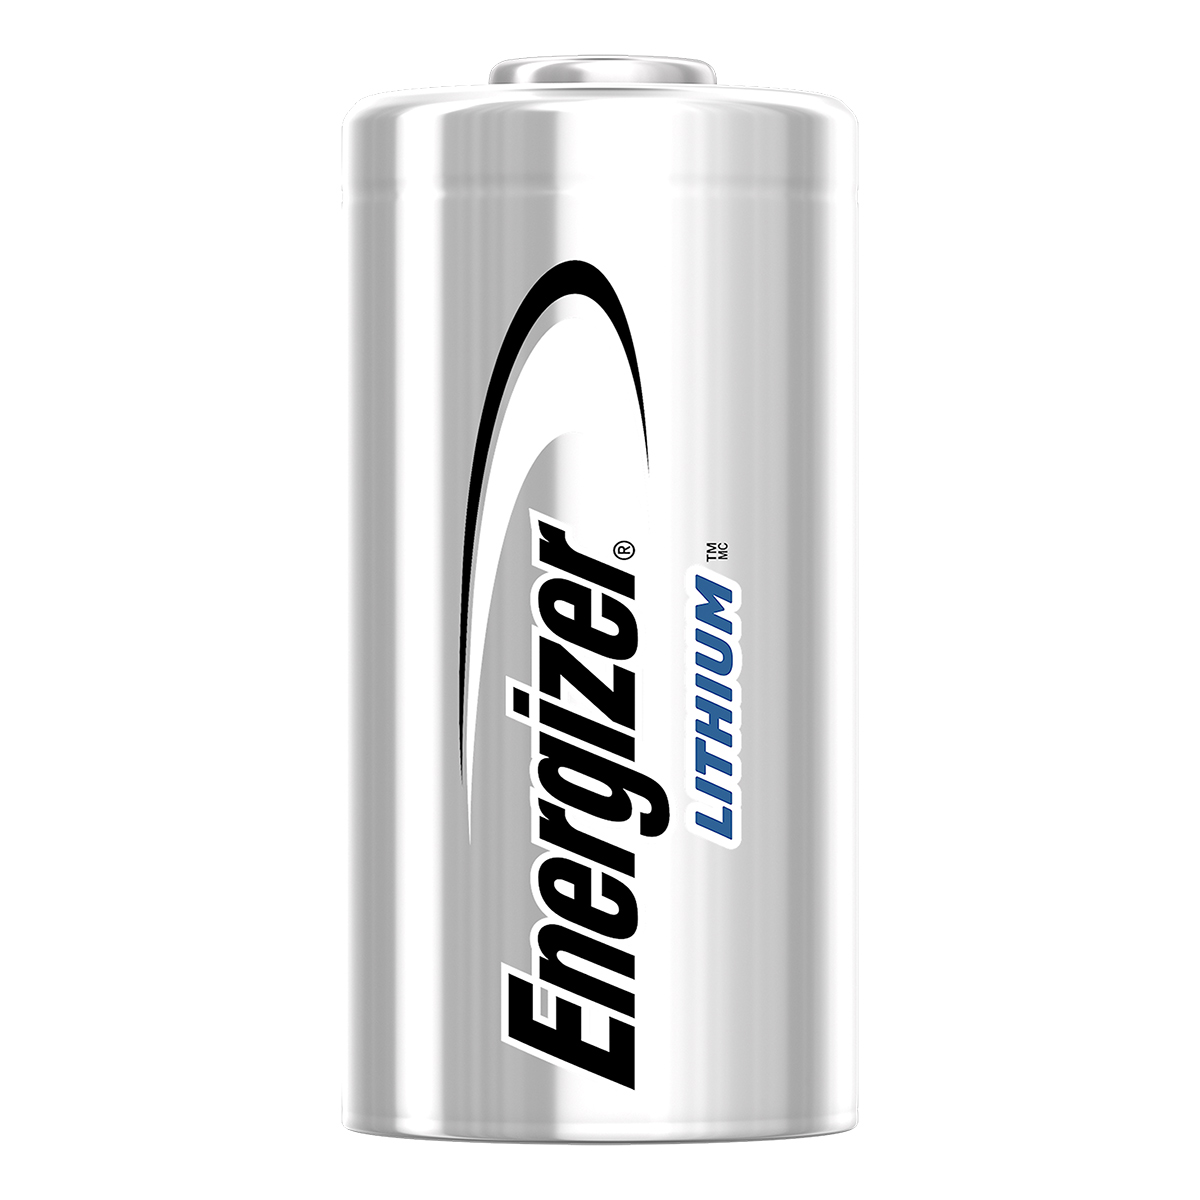 Energizer lithium photo battery 123